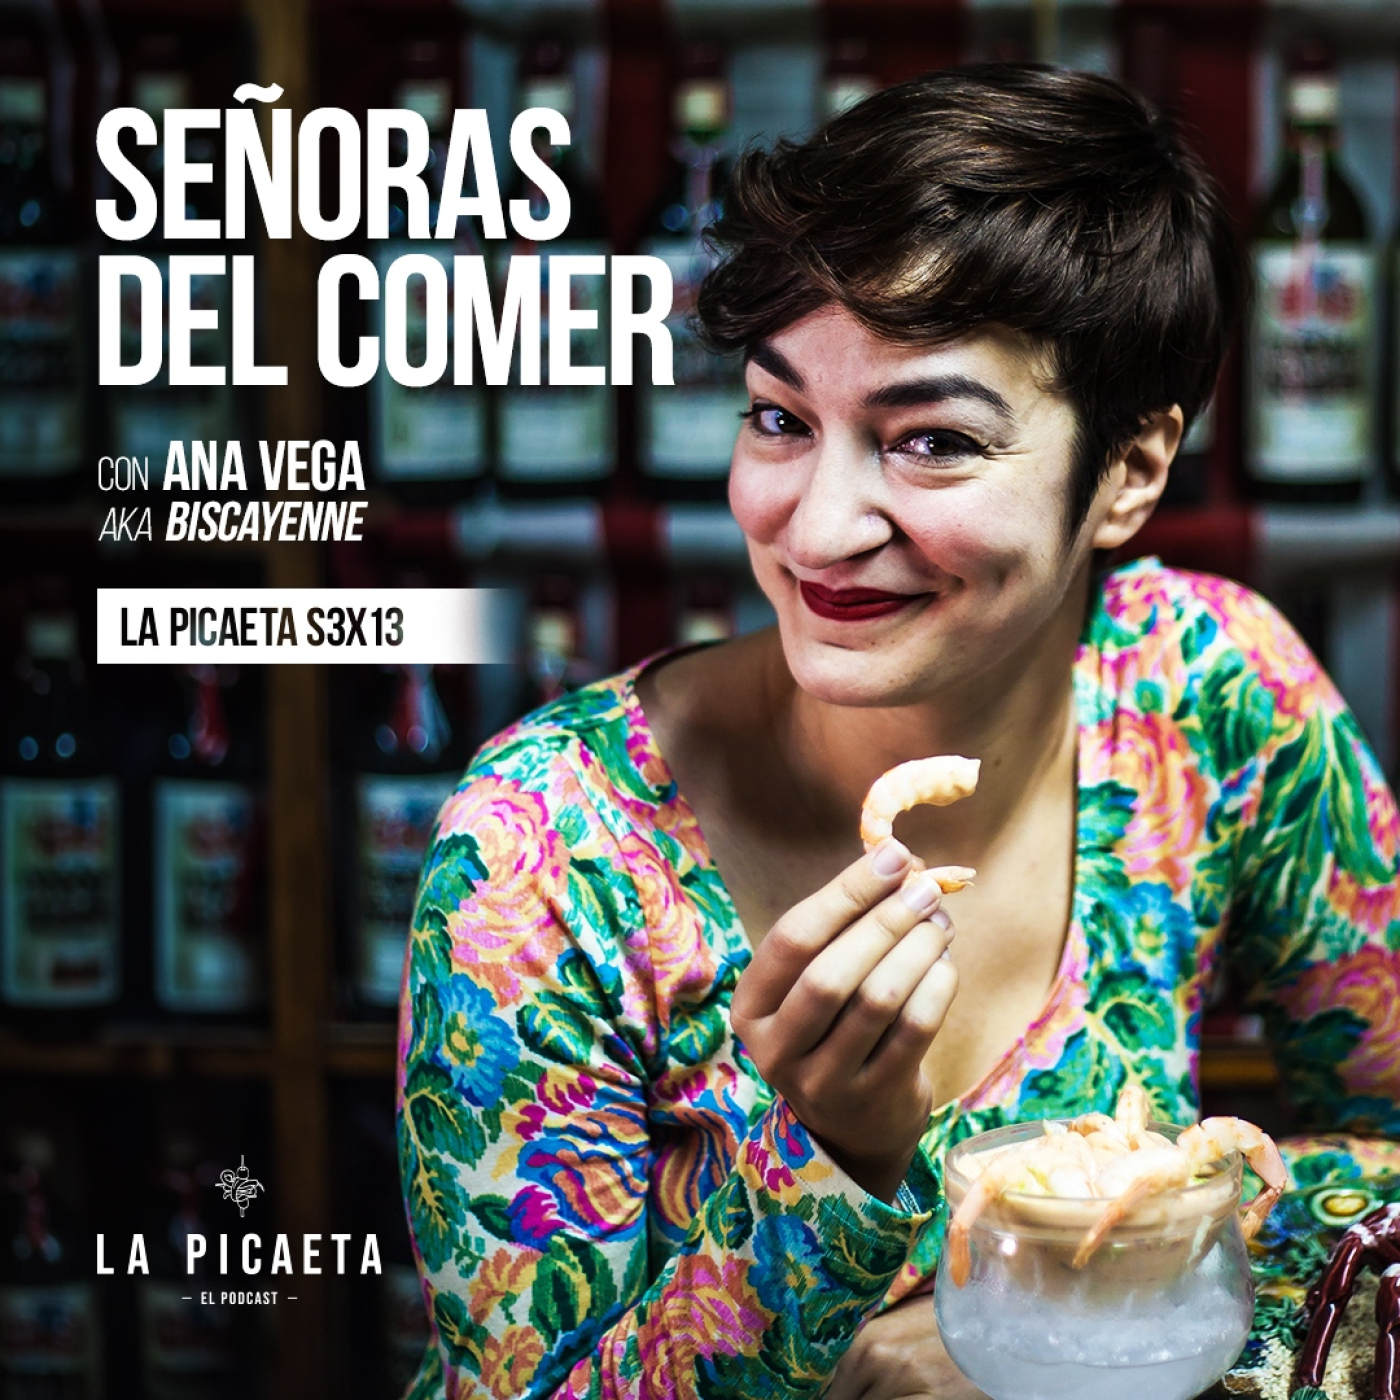 SEÑORAS DEL COMER con Ana Vega “Biscayenne” | La Picaeta S3E13